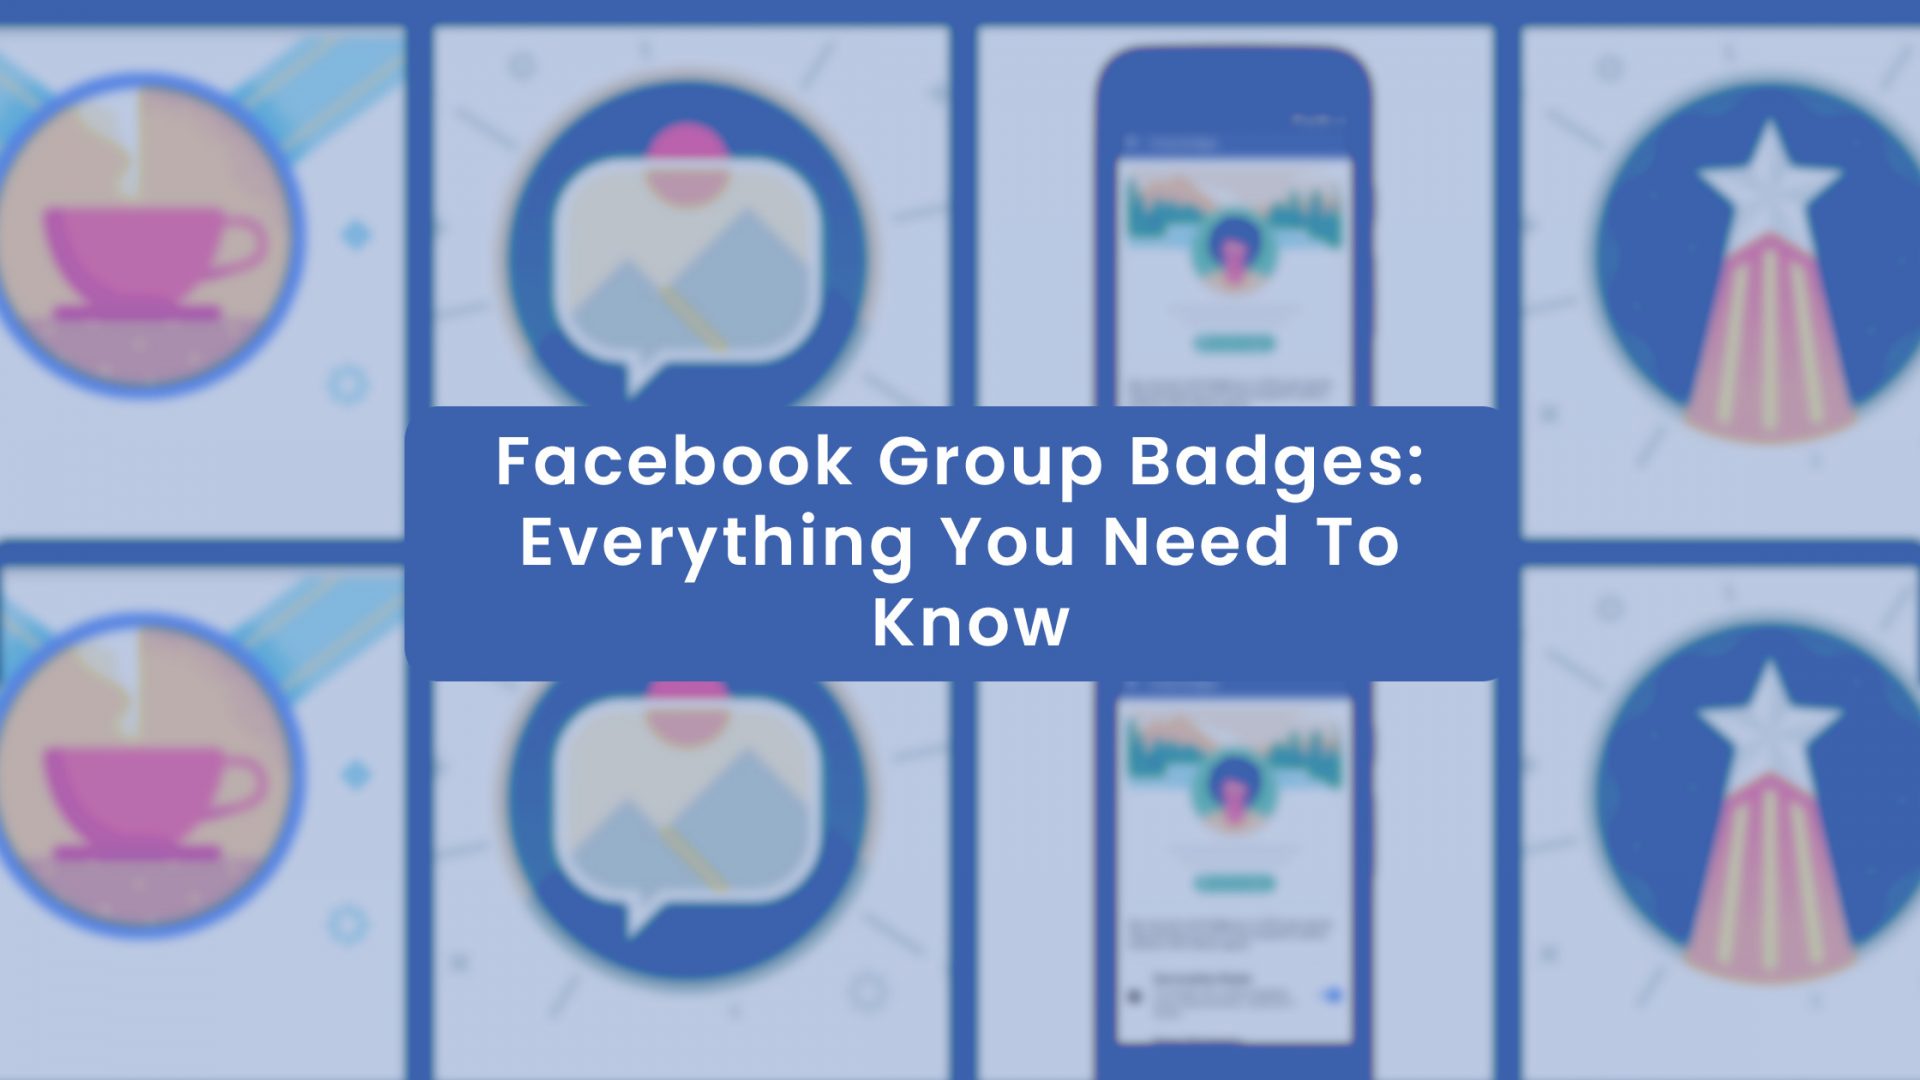 Facebook group badges